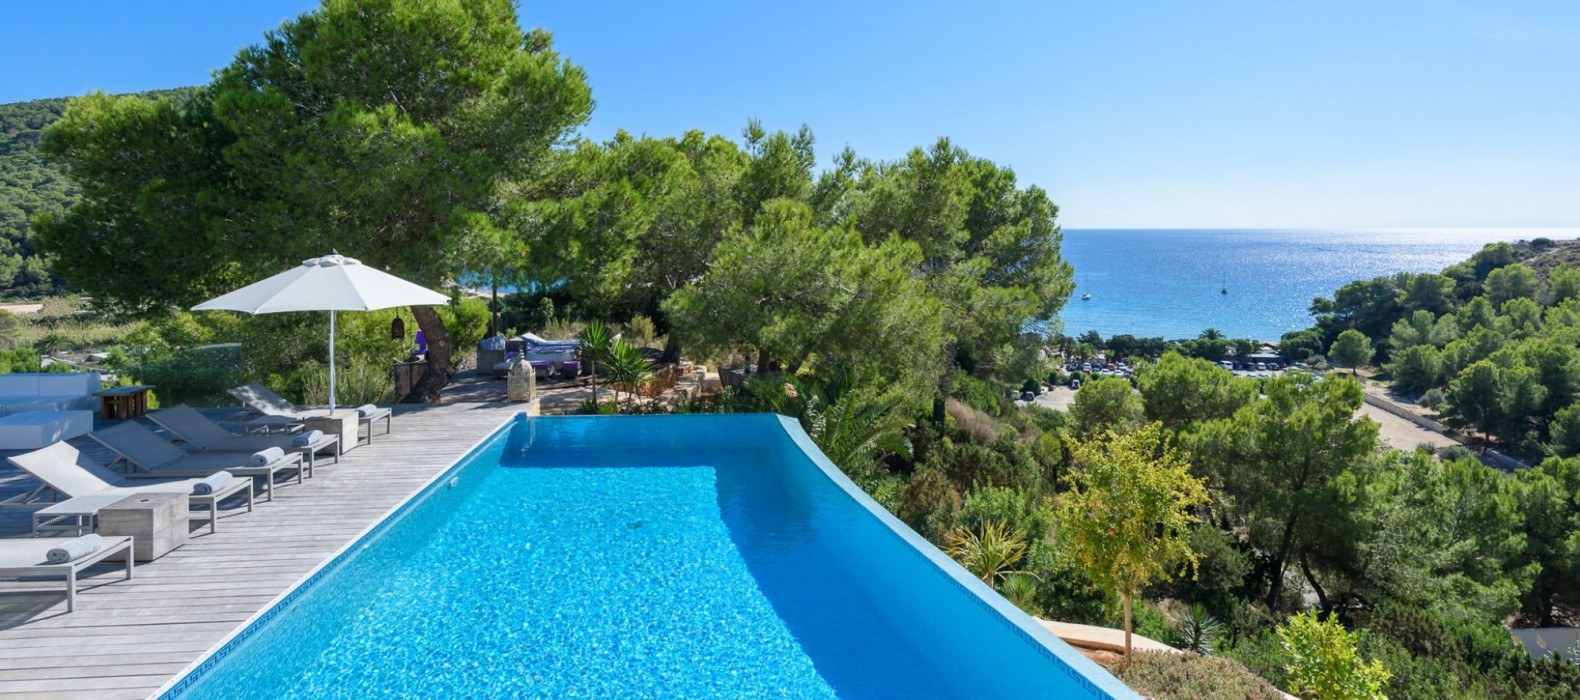 Exterior pool area of Villa Blue Dreams in Ibiza